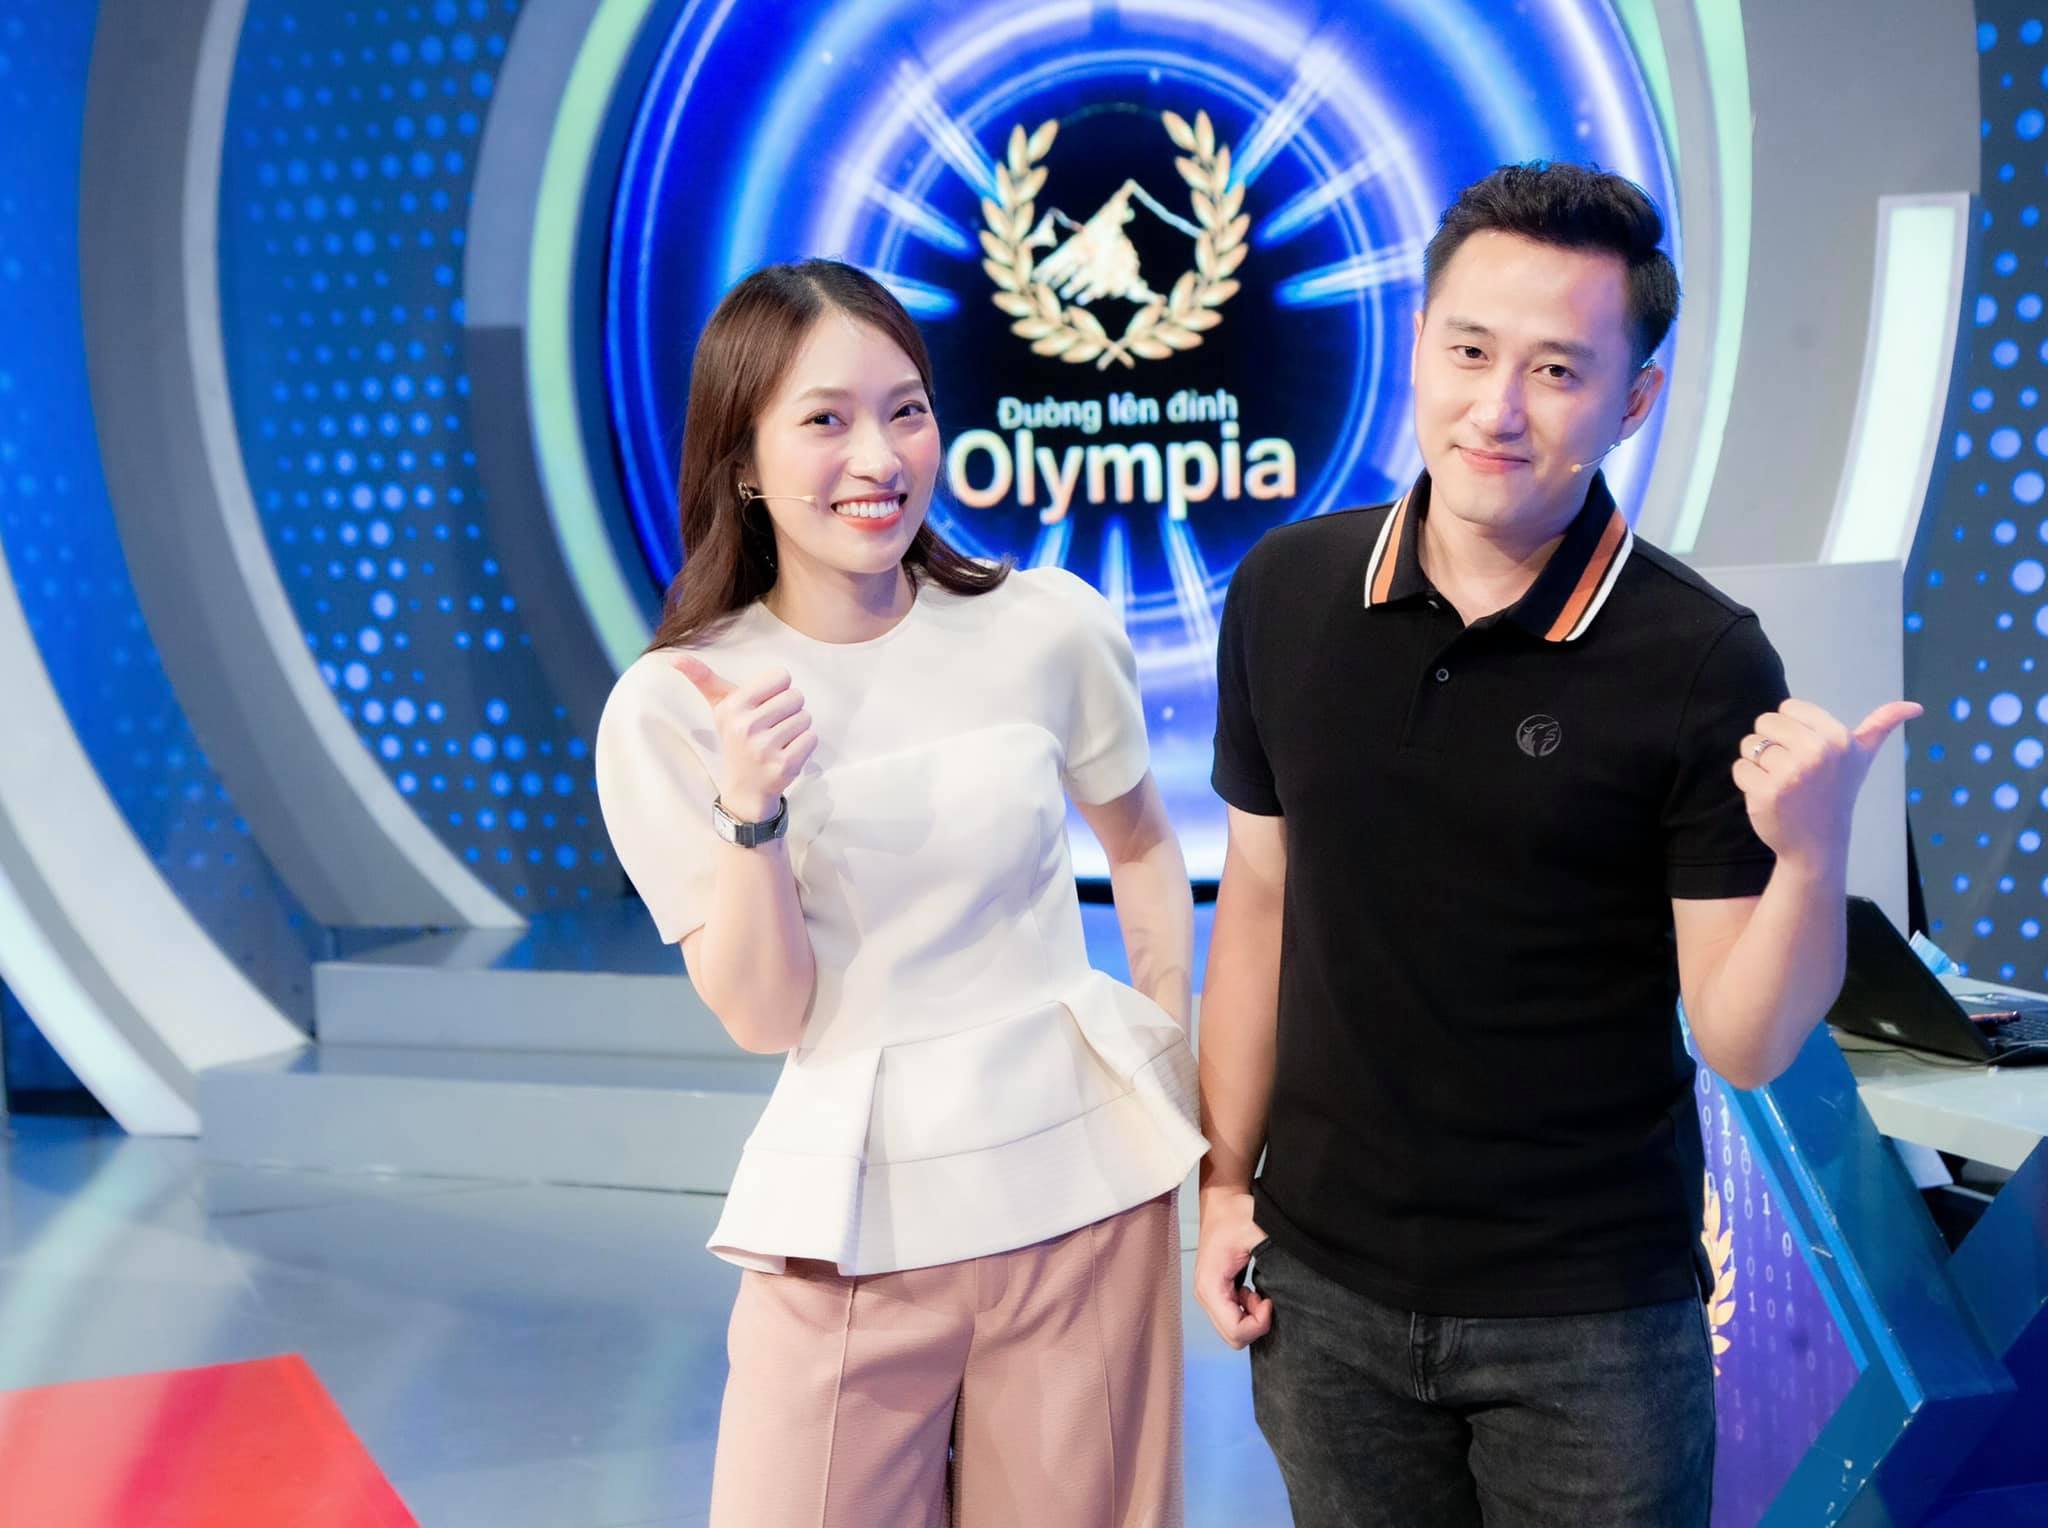 Hình ảnh Khánh Vy bên cạnh MC Ngọc Huy chuẩn bị cho Đường lên đỉnh Olympia mùa thứ 22